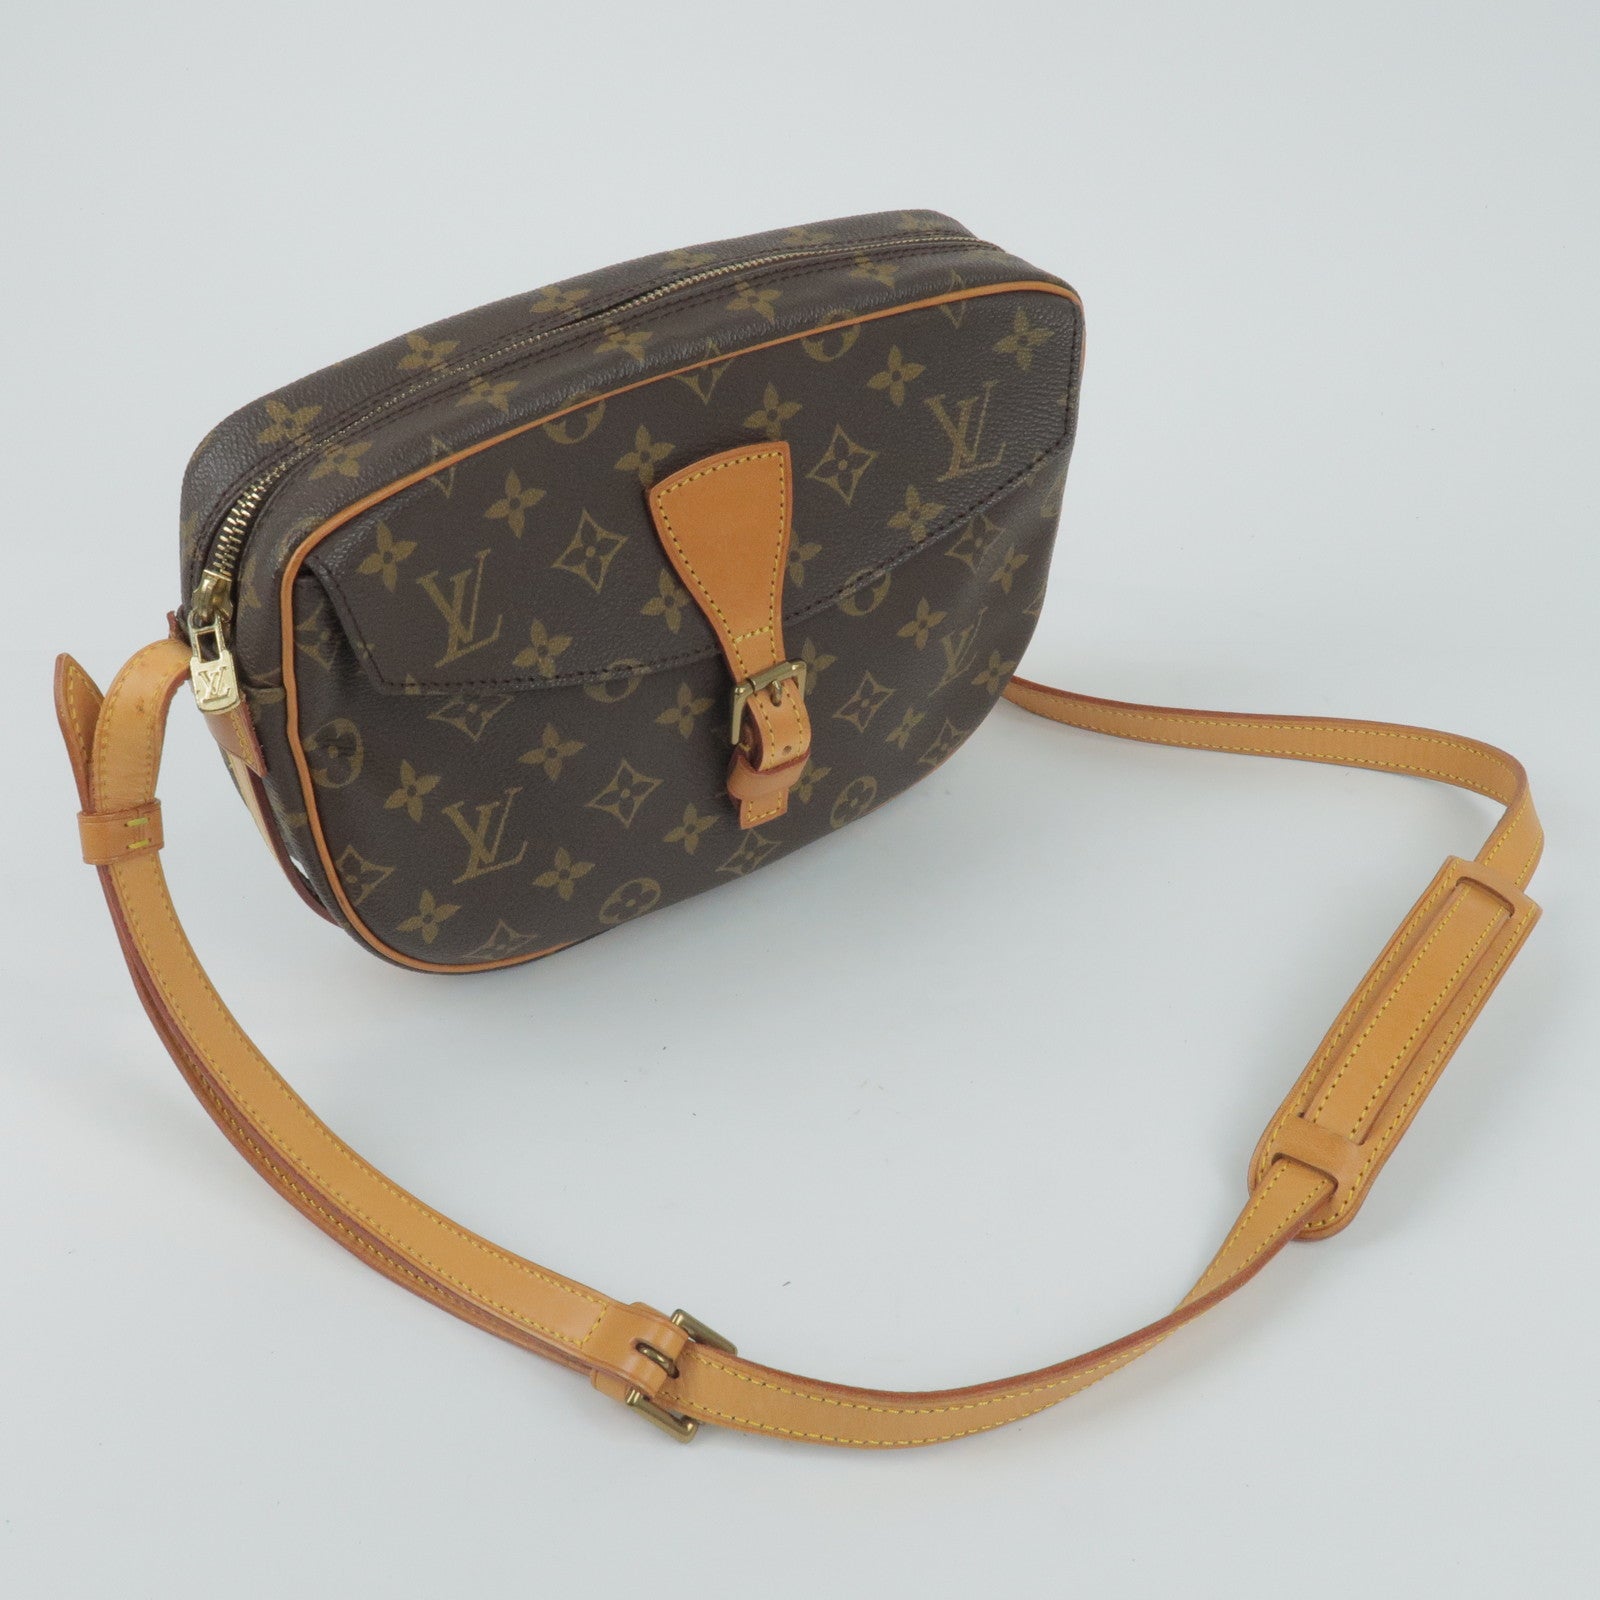 Best Deals for Louis Vuitton Jeune Fille Bag